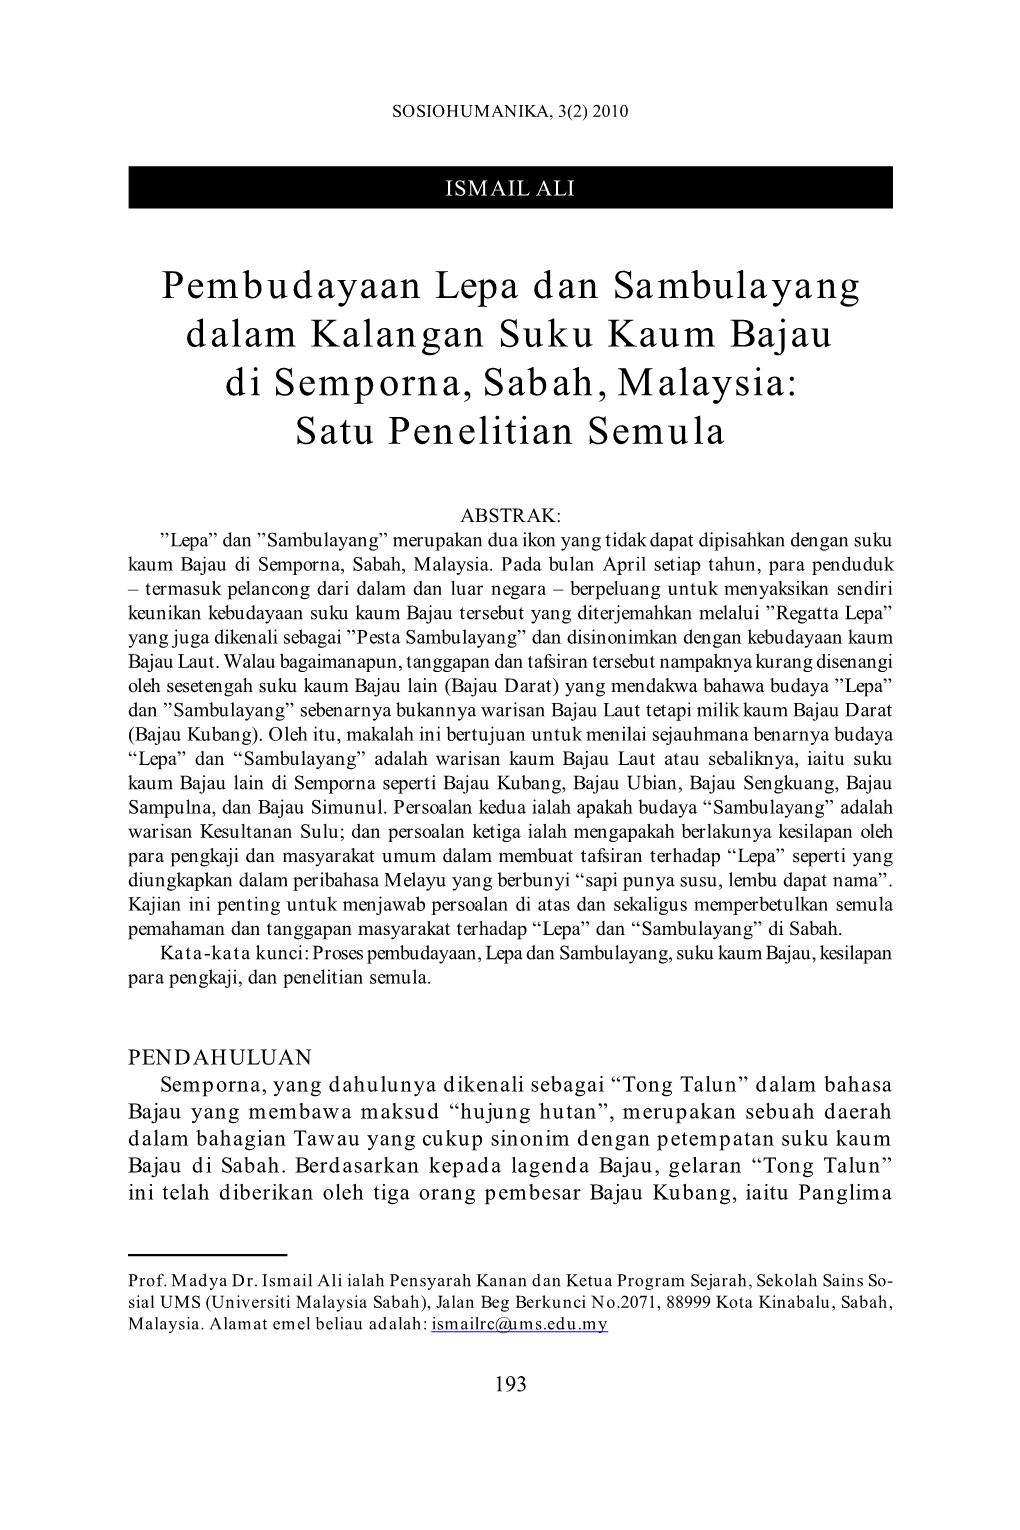 Pembudayaan Lepa Dan Sambulayang Dalam Kalangan Suku Kaum Bajau Di Semporna, Sabah, Malaysia: Satu Penelitian Semula